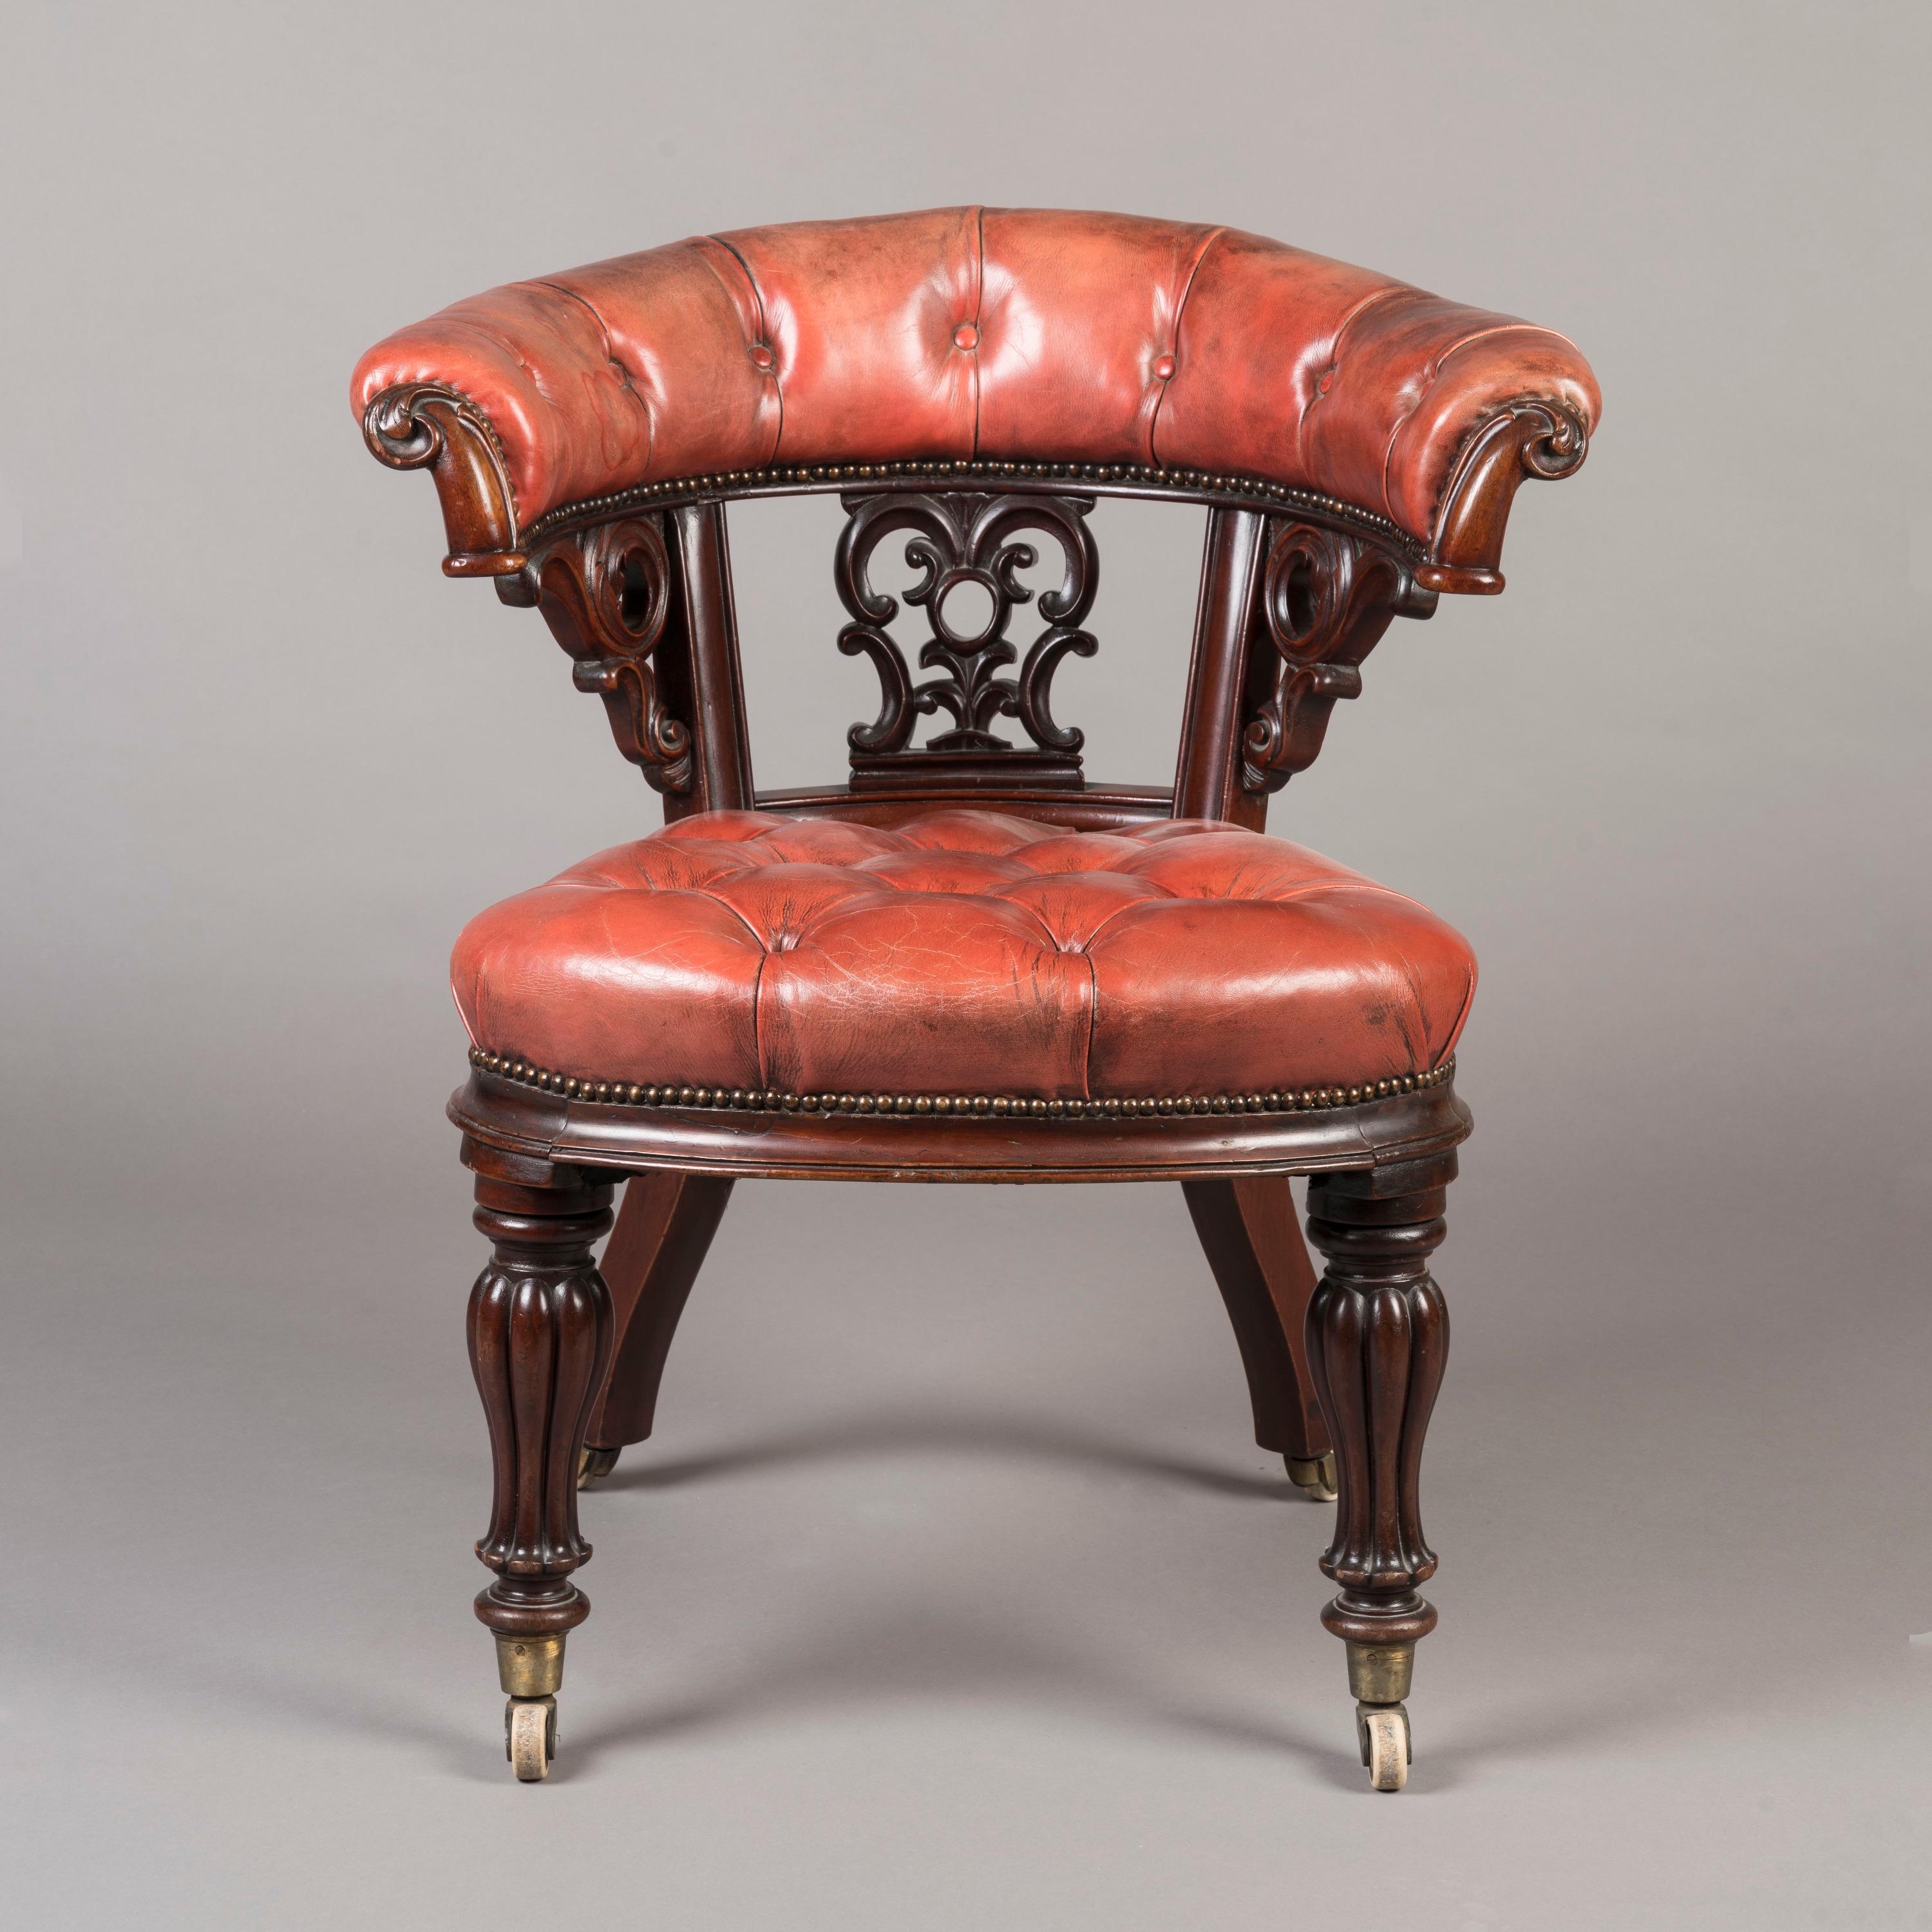 Chaise de bureau en acajou sculpté du milieu du XIXe siècle

Construite en acajou massif sculpté, la chaise repose sur des pieds balustres lobés à l'avant et sur des pieds évasés à l'arrière, tous munis de roulettes en porcelaine. Le dossier en